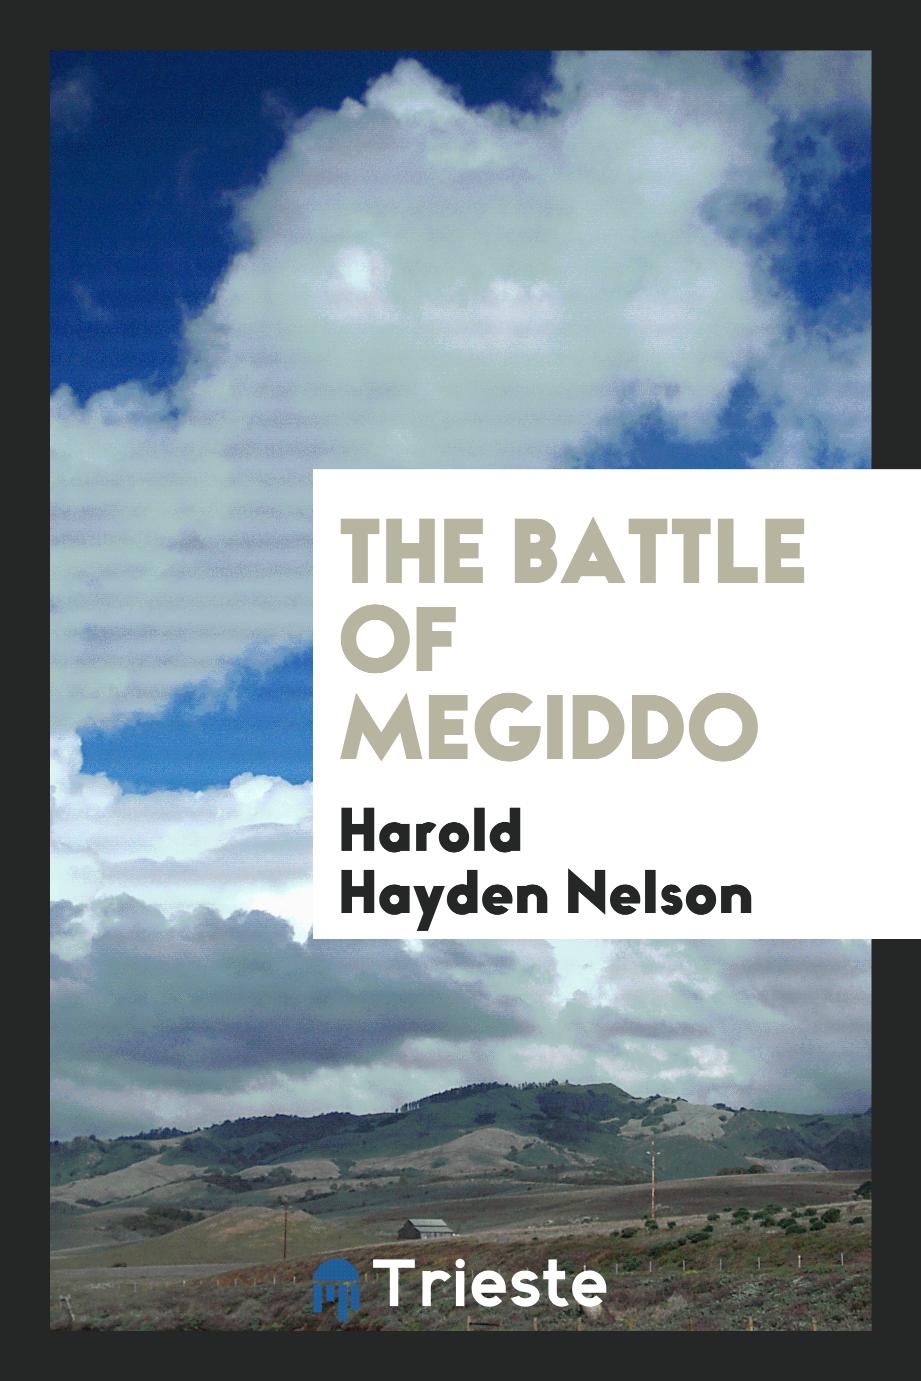 The Battle of Megiddo